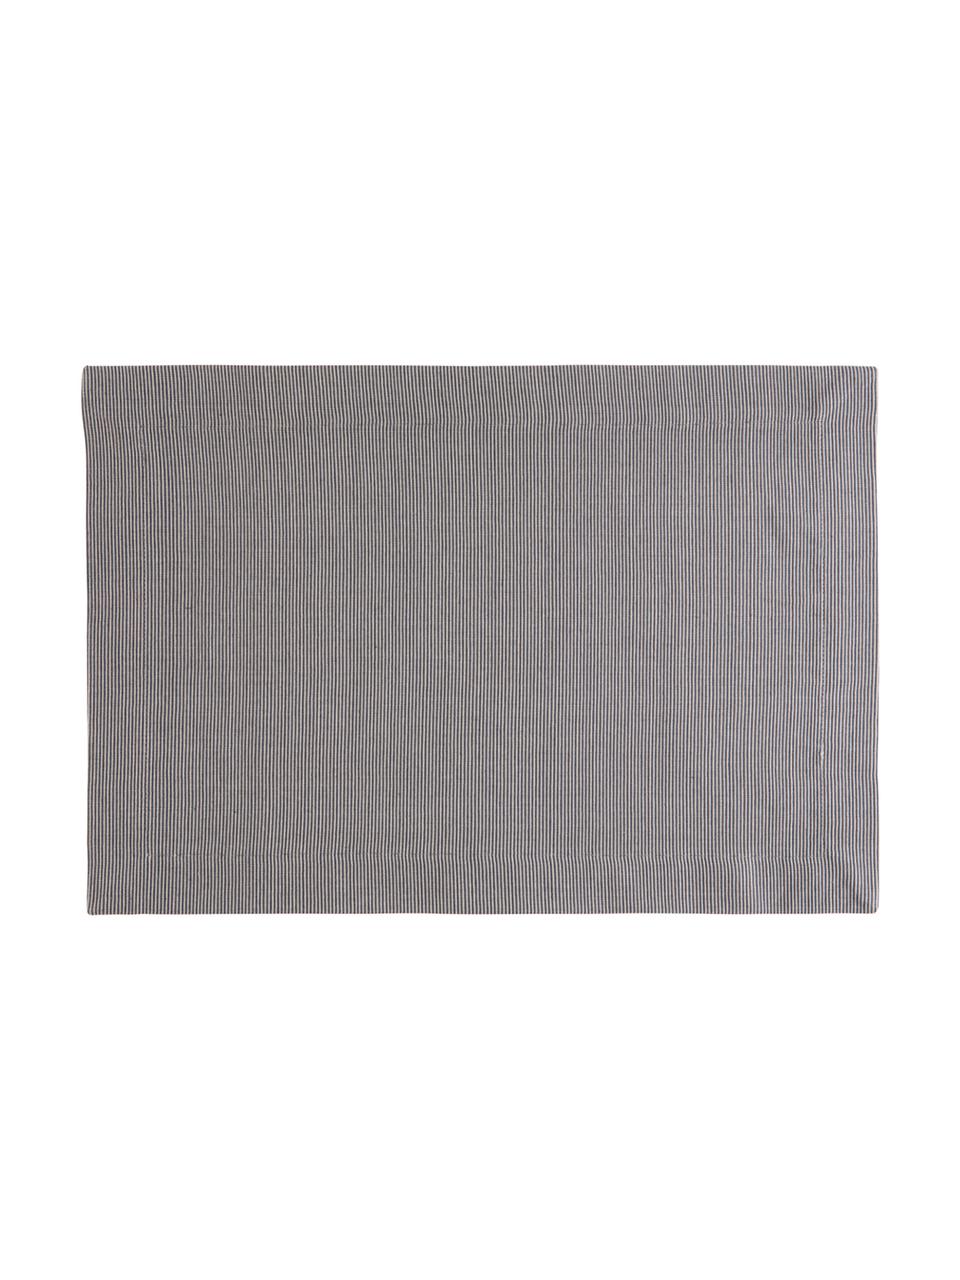 Baumwoll-Tischsets Bombay, 2 Stück, Baumwolle, Grau, 35 x 50 cm